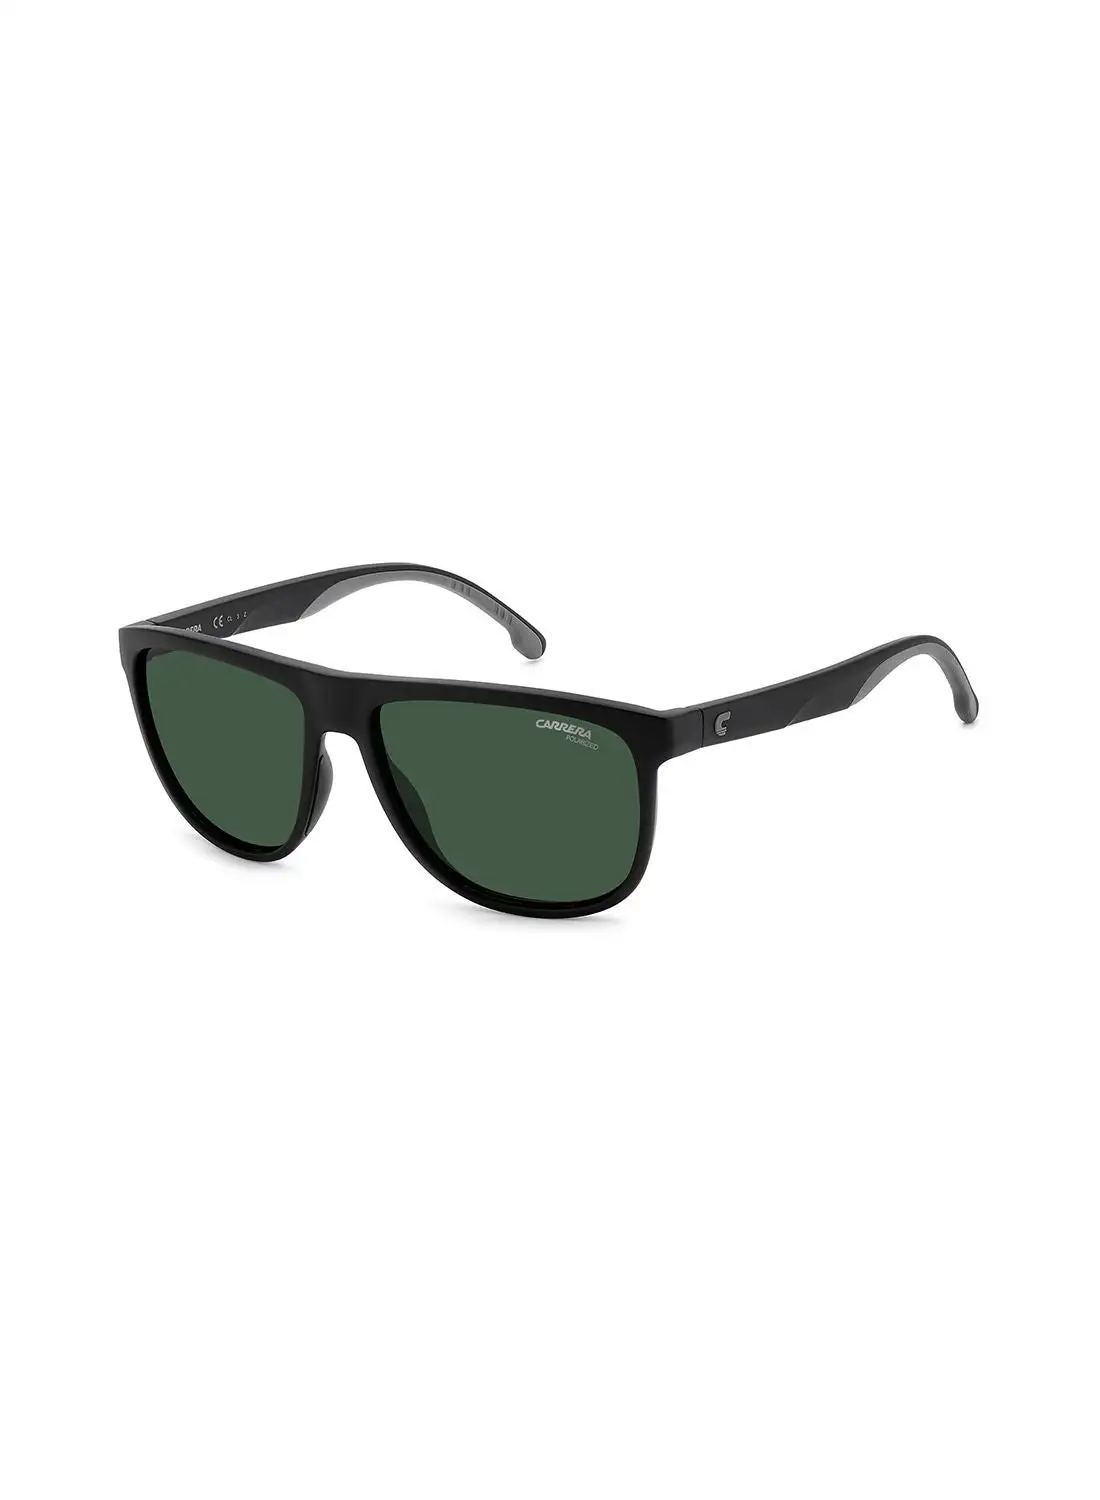 كاريرا نظارة شمسية للرجال للحماية من الأشعة فوق البنفسجية - Carrera 8059/S أسود مطفي 58 - مقاس العدسة: 58 ملم